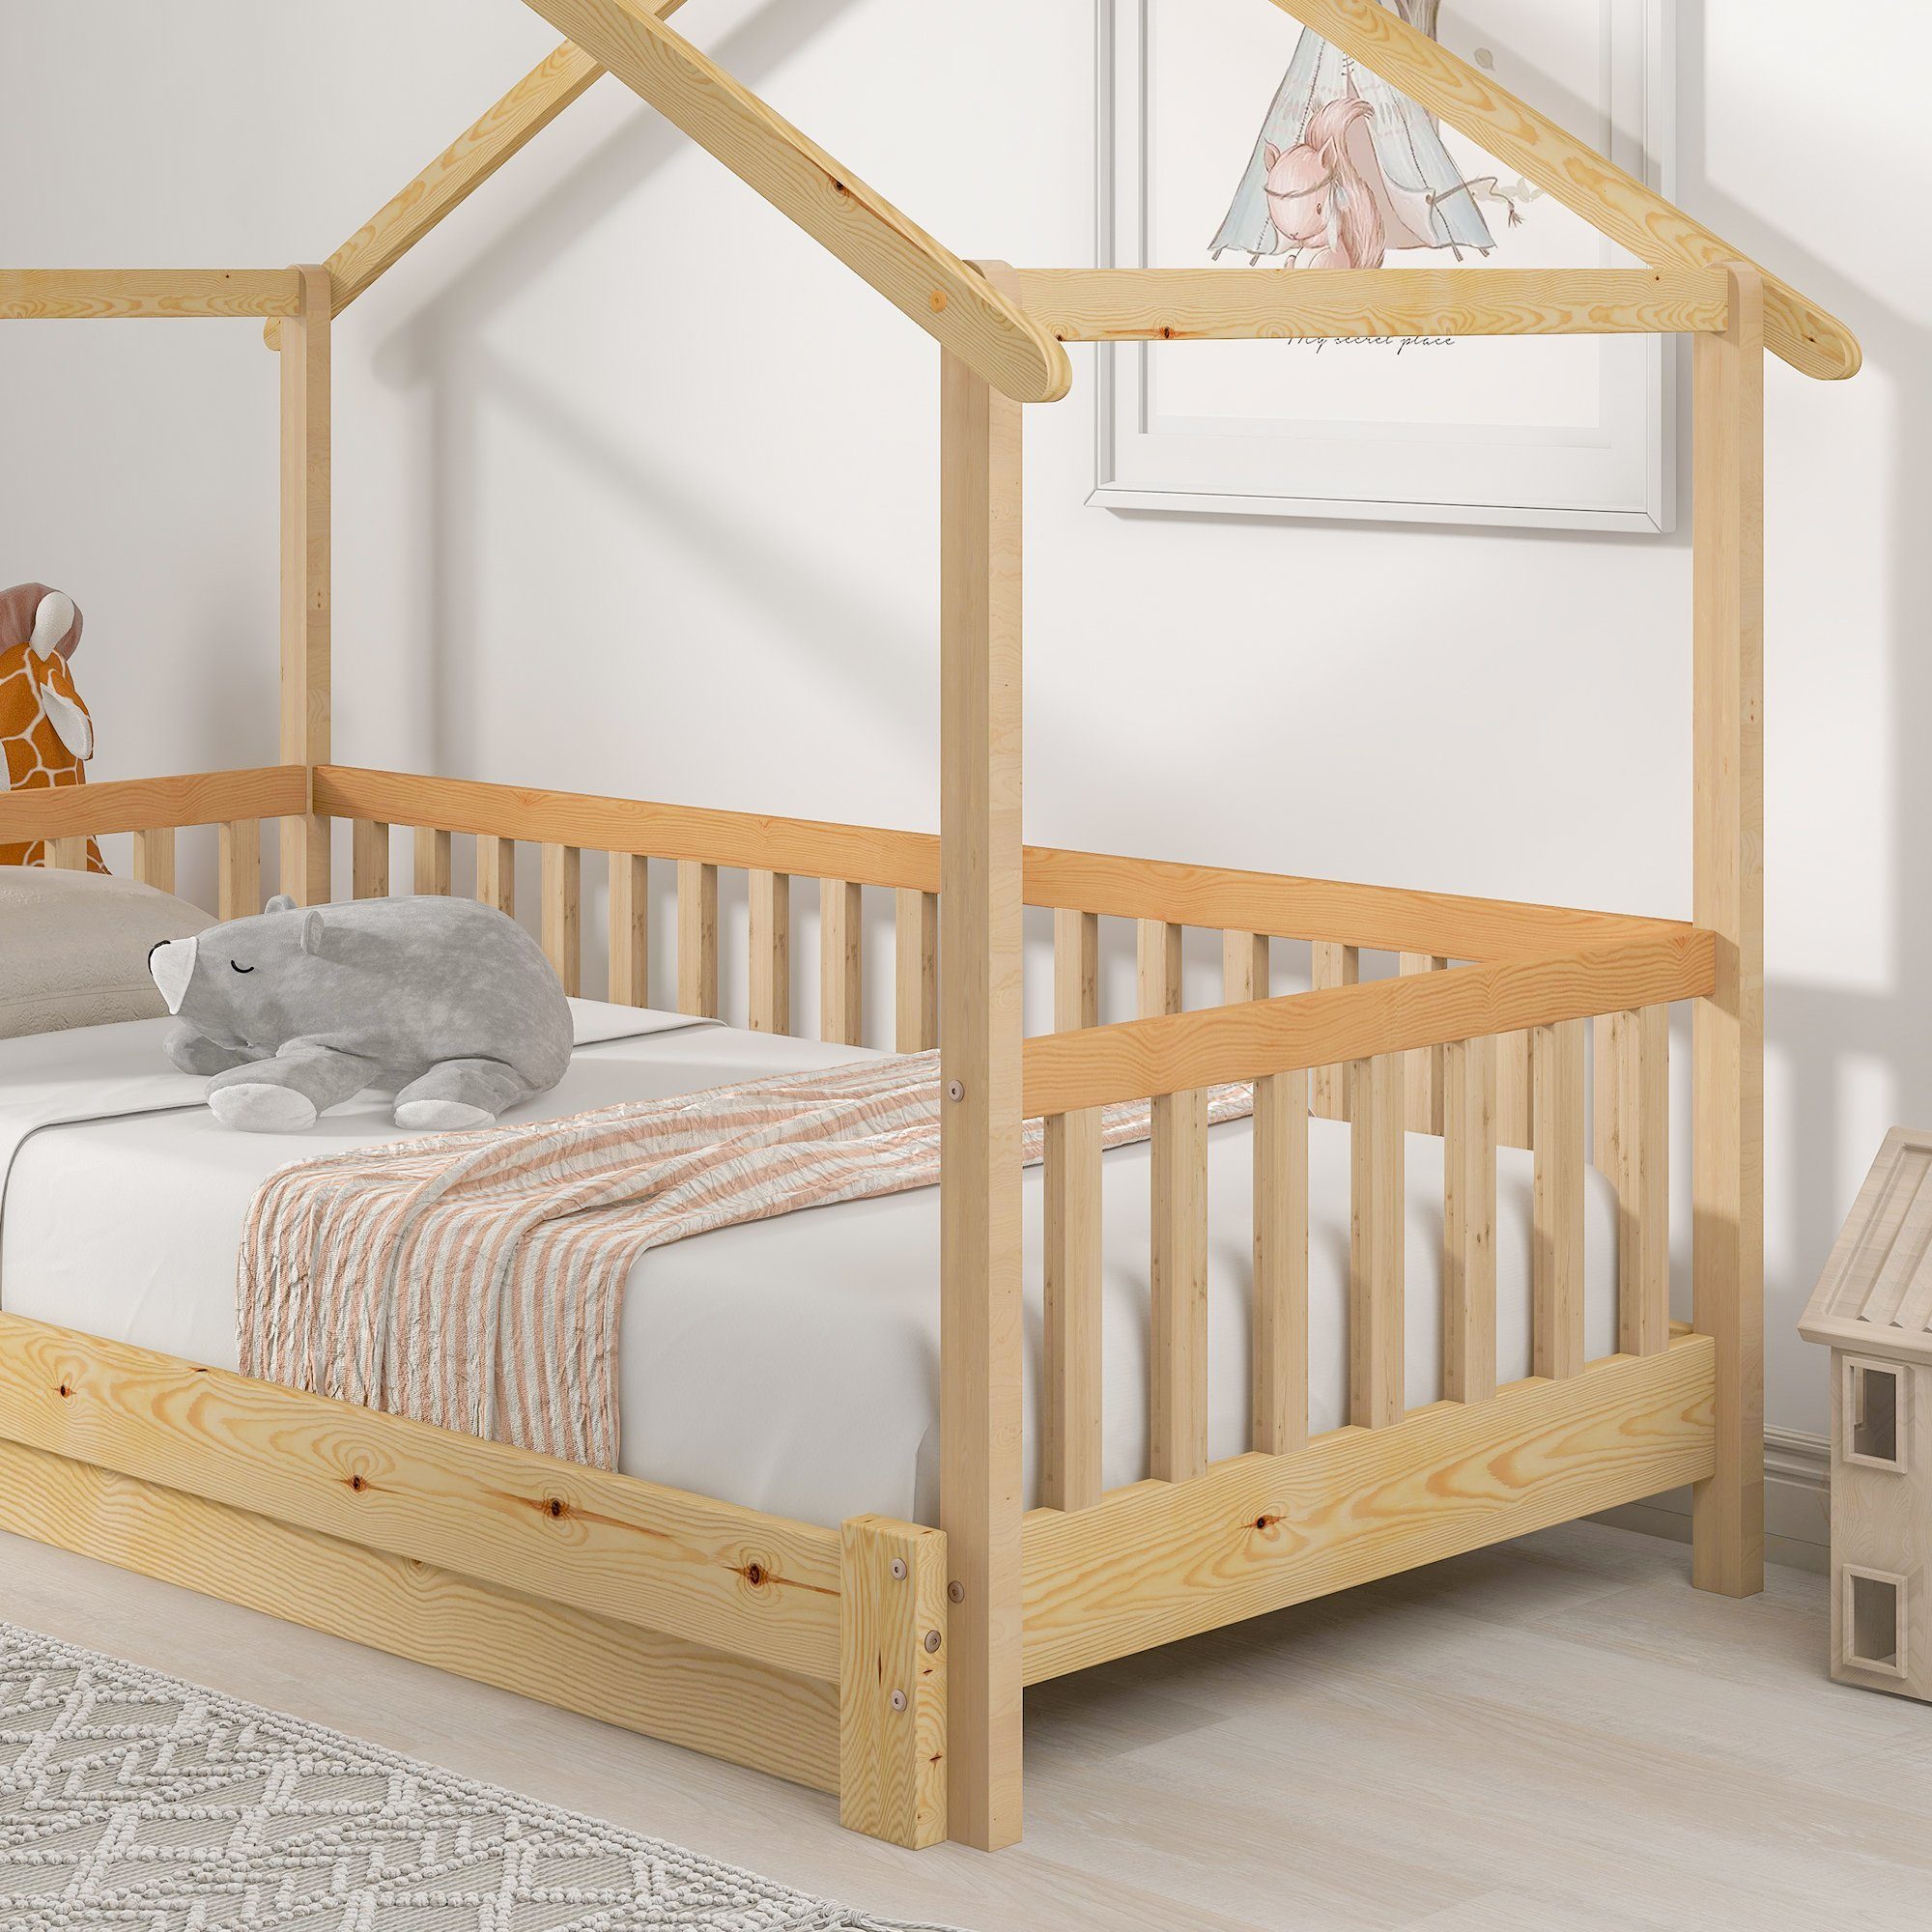 Merax Hausbett aus Rausfallschutz, Kinderbett Massivholz Ausziehbett,Einzelbett/Doppelbett, mit 90x200cm/180x200cm